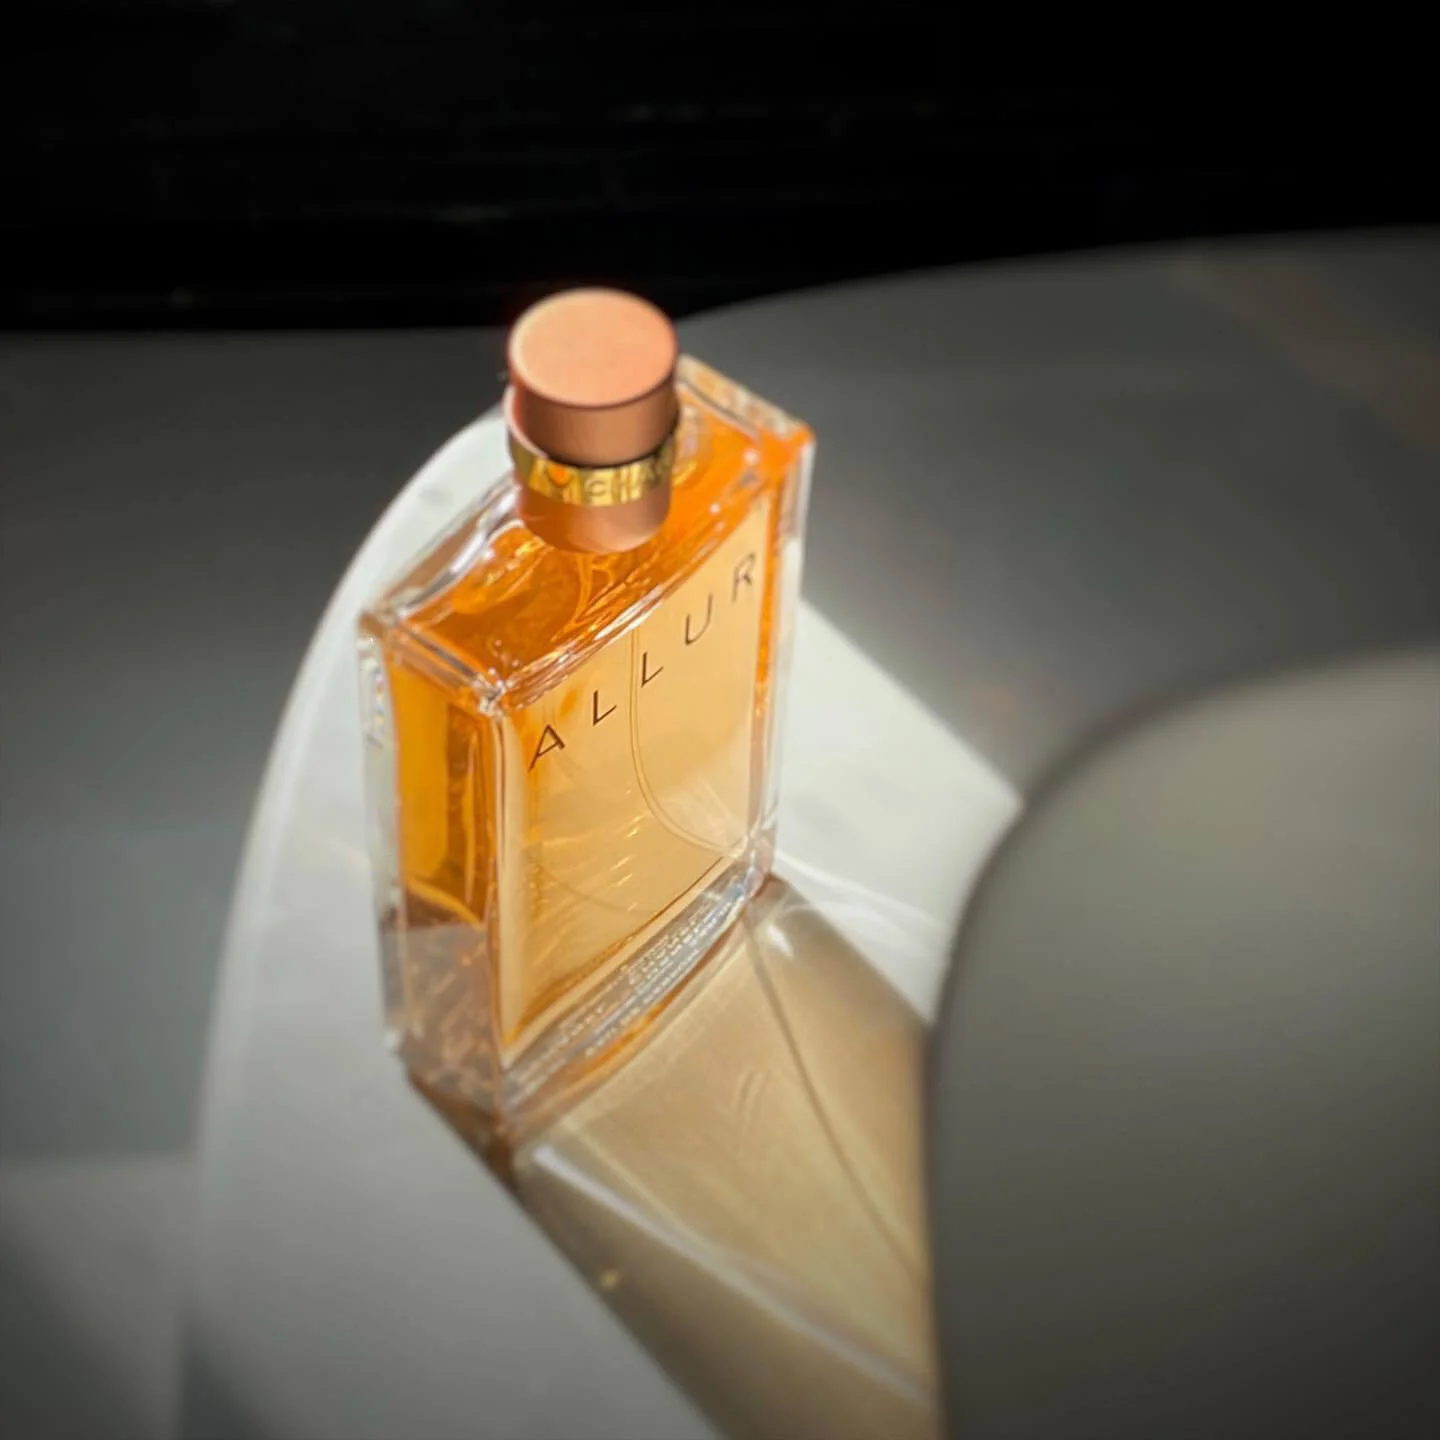 Chanel Perfume  Allure Sensuelle by Chanel  perfumes for women  Eau de  Toilette 100ml price in UAE  Amazon UAE  kanbkam